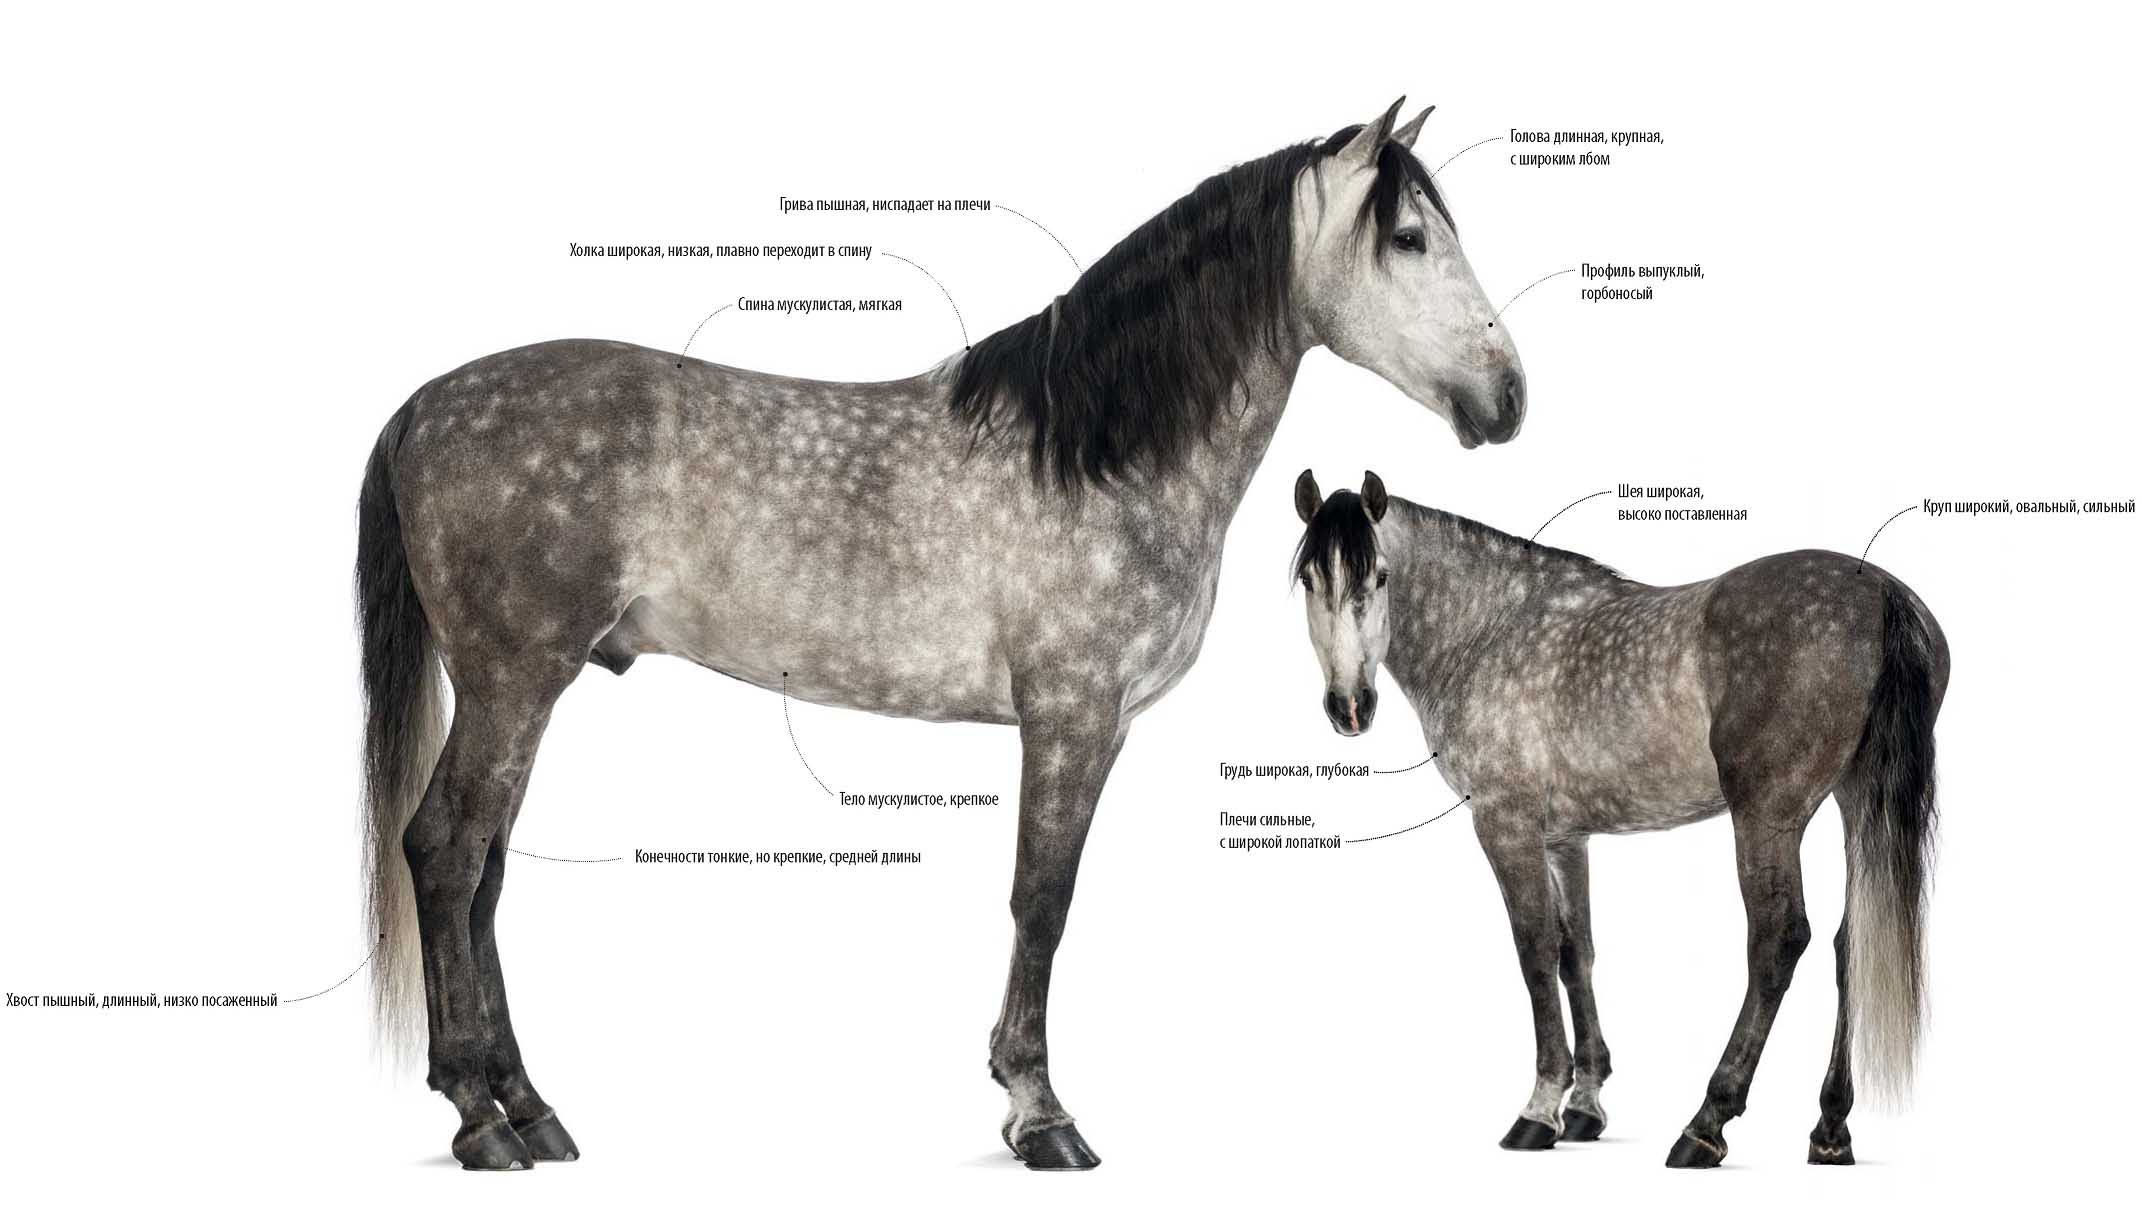 Приметы андалузской, или испанской лошади.